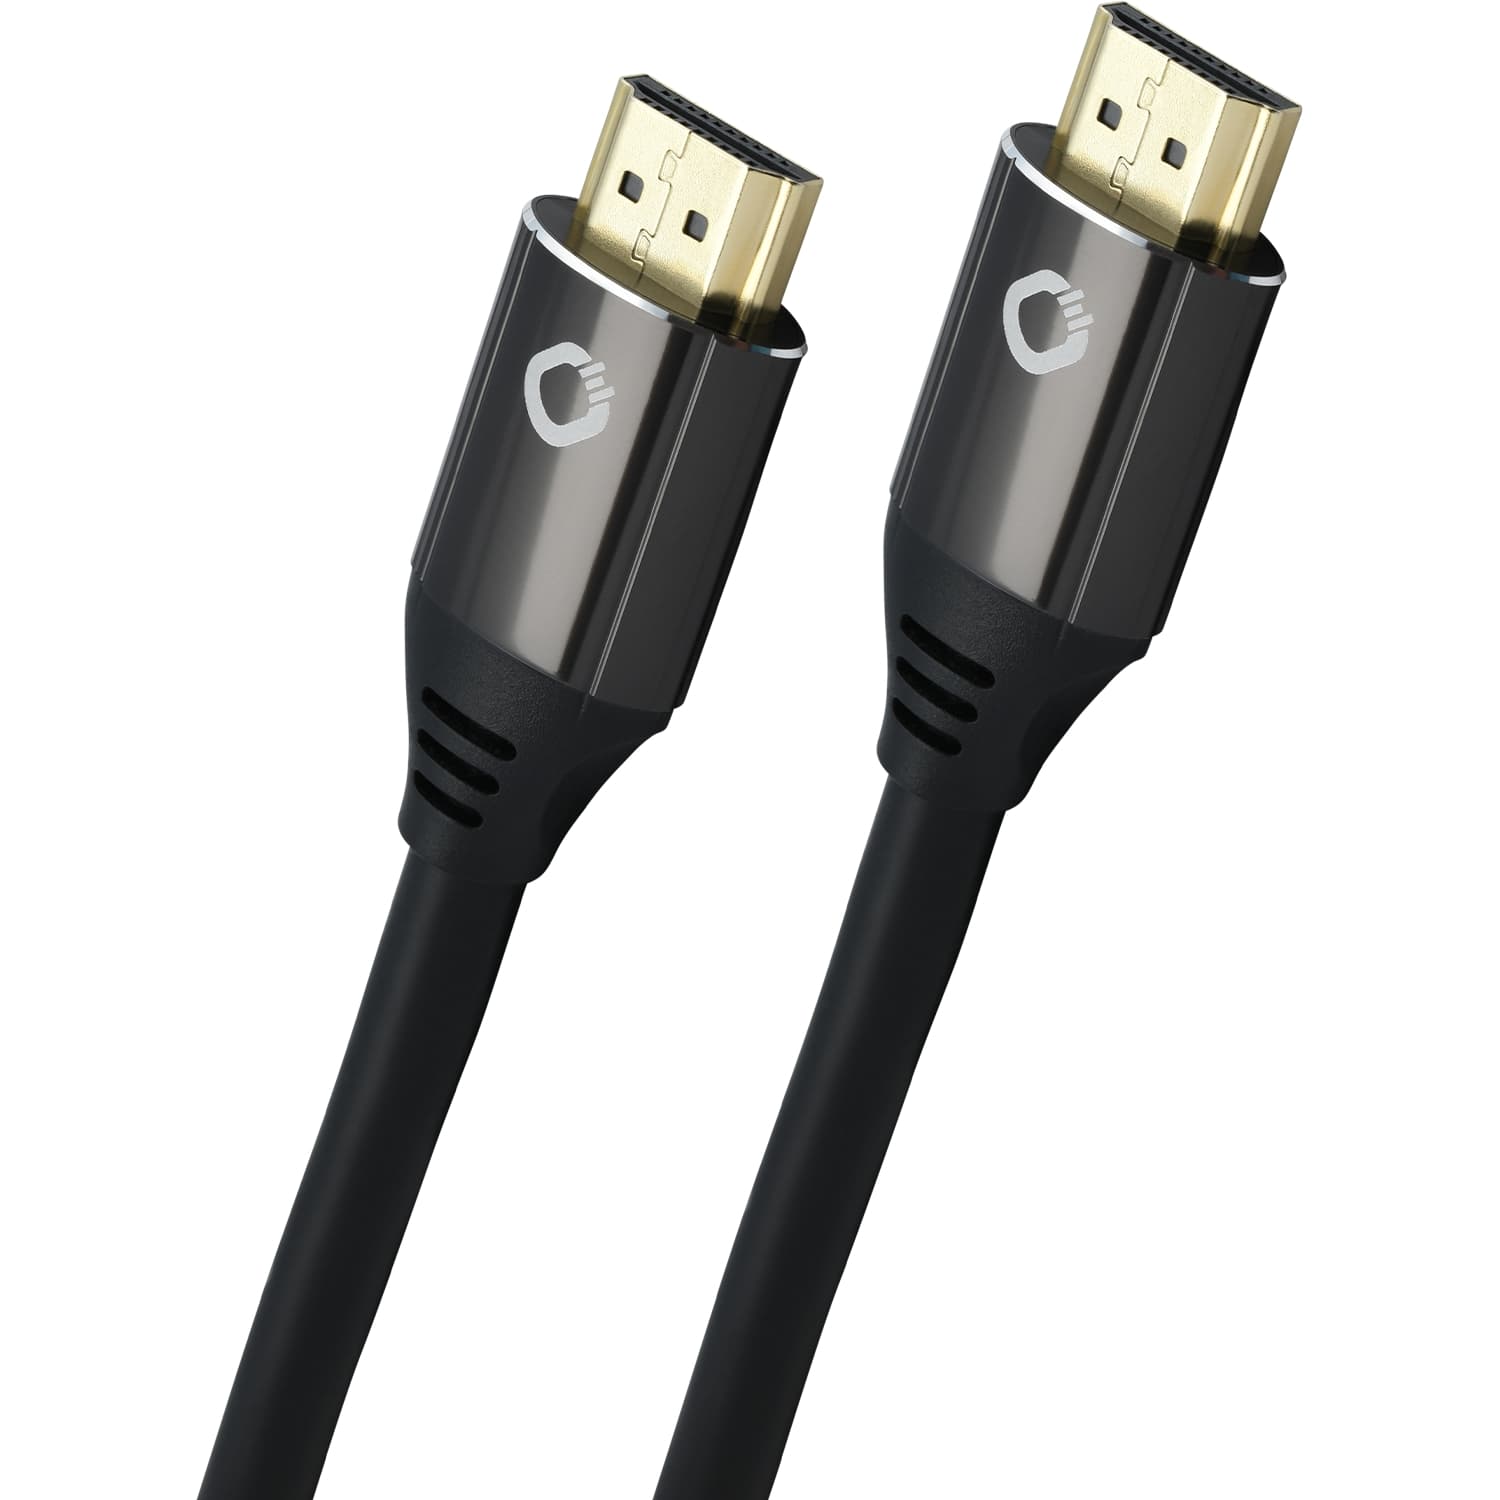 HDMI кабели Oehlbach PERFORMANCE Black Magic MKII, UHS HDMI, 5,0m black, D1C92496 hdmi кабели oehlbach hdmi